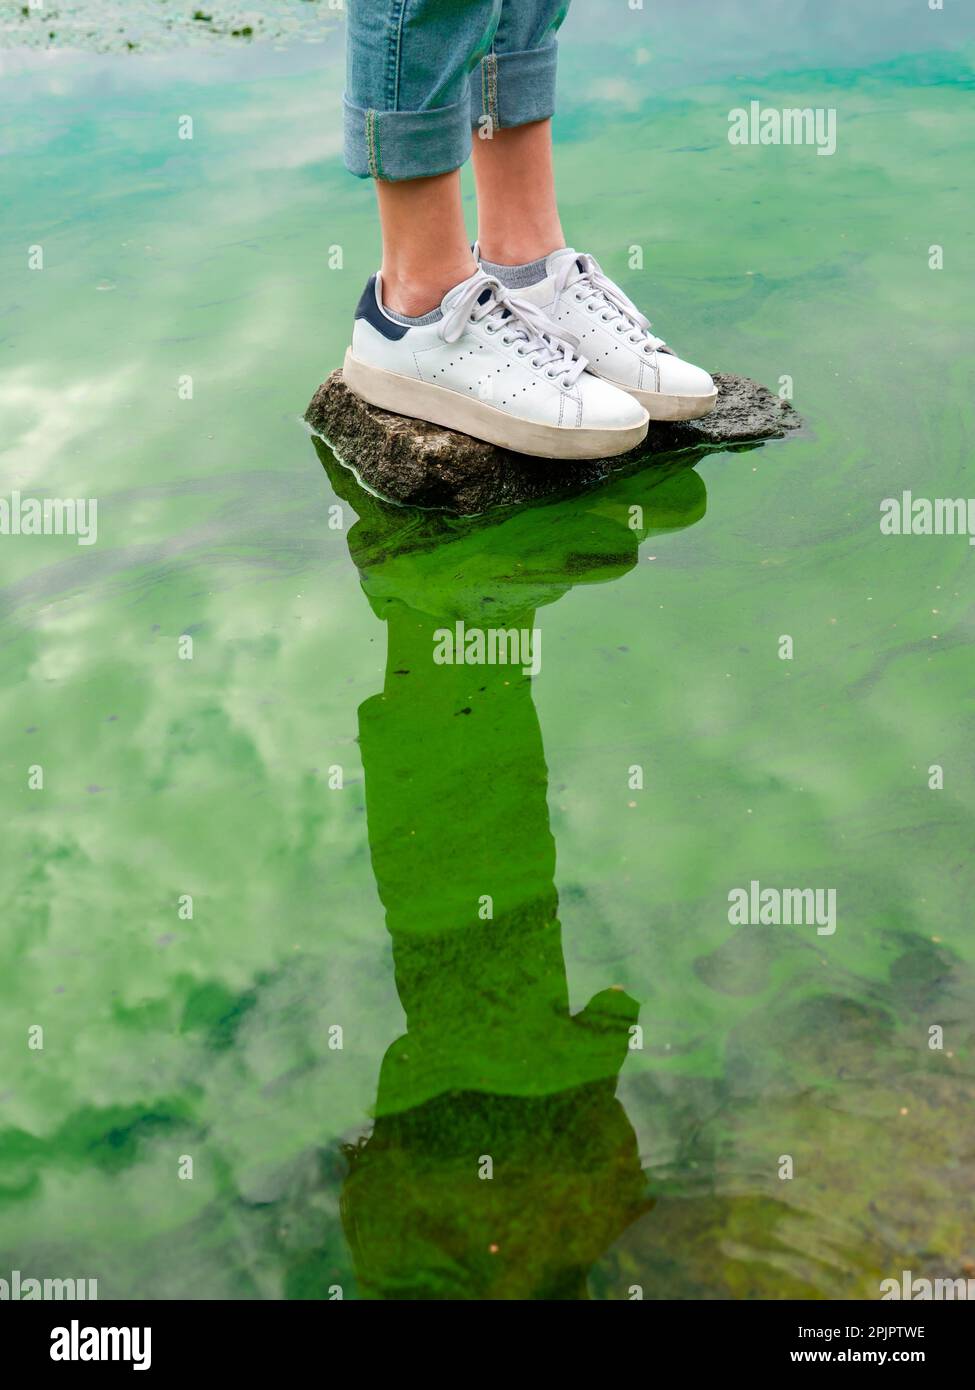 Une personne se tient sur une pierre dans l'eau avec des algues bleues et vertes qui fleurissent. Pollution de l'eau et problèmes écologiques concept. Banque D'Images